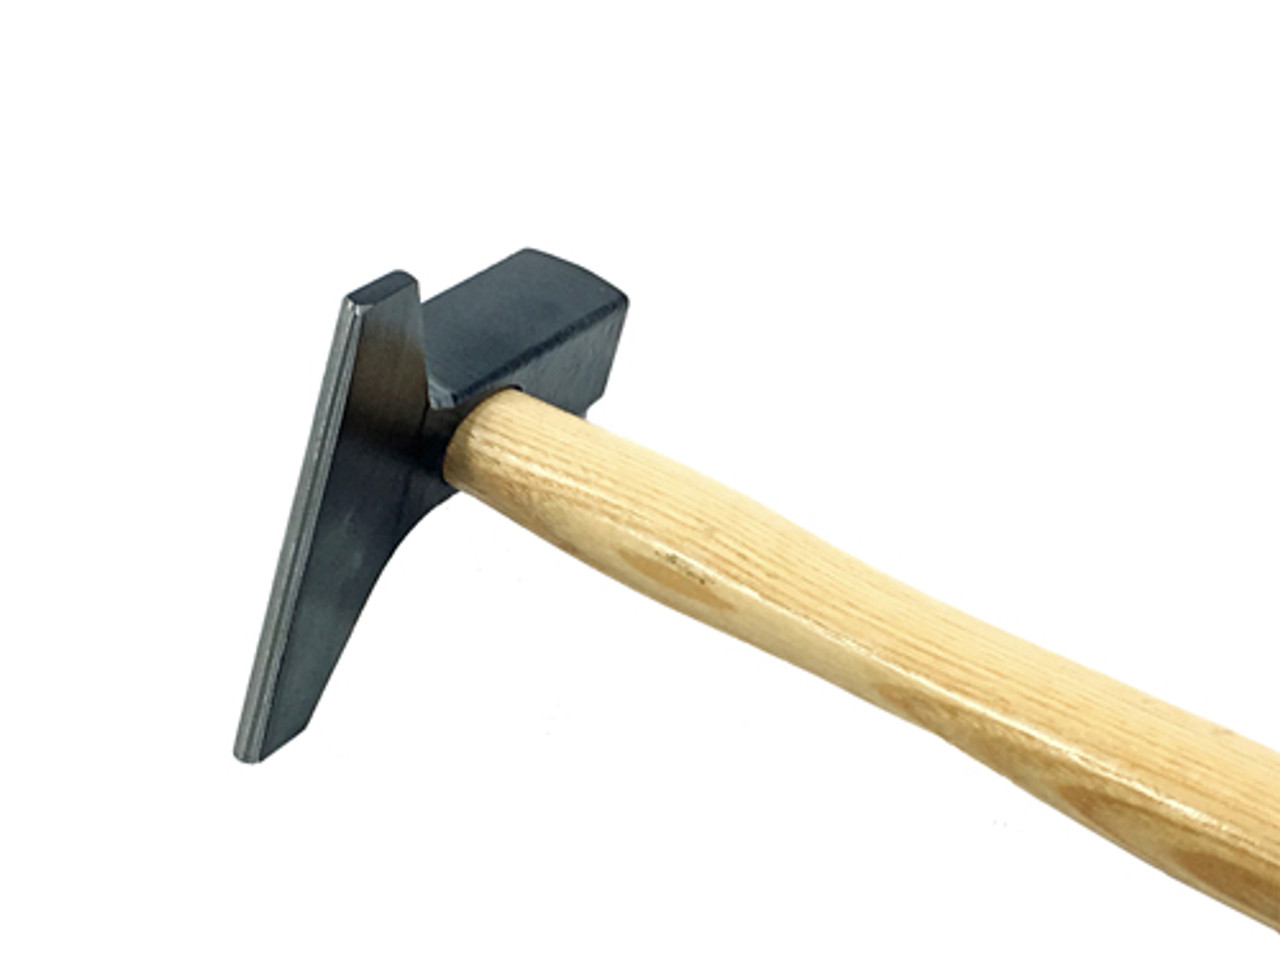 Picard 500 gm Inlaid Woodwork Veneer hammer.